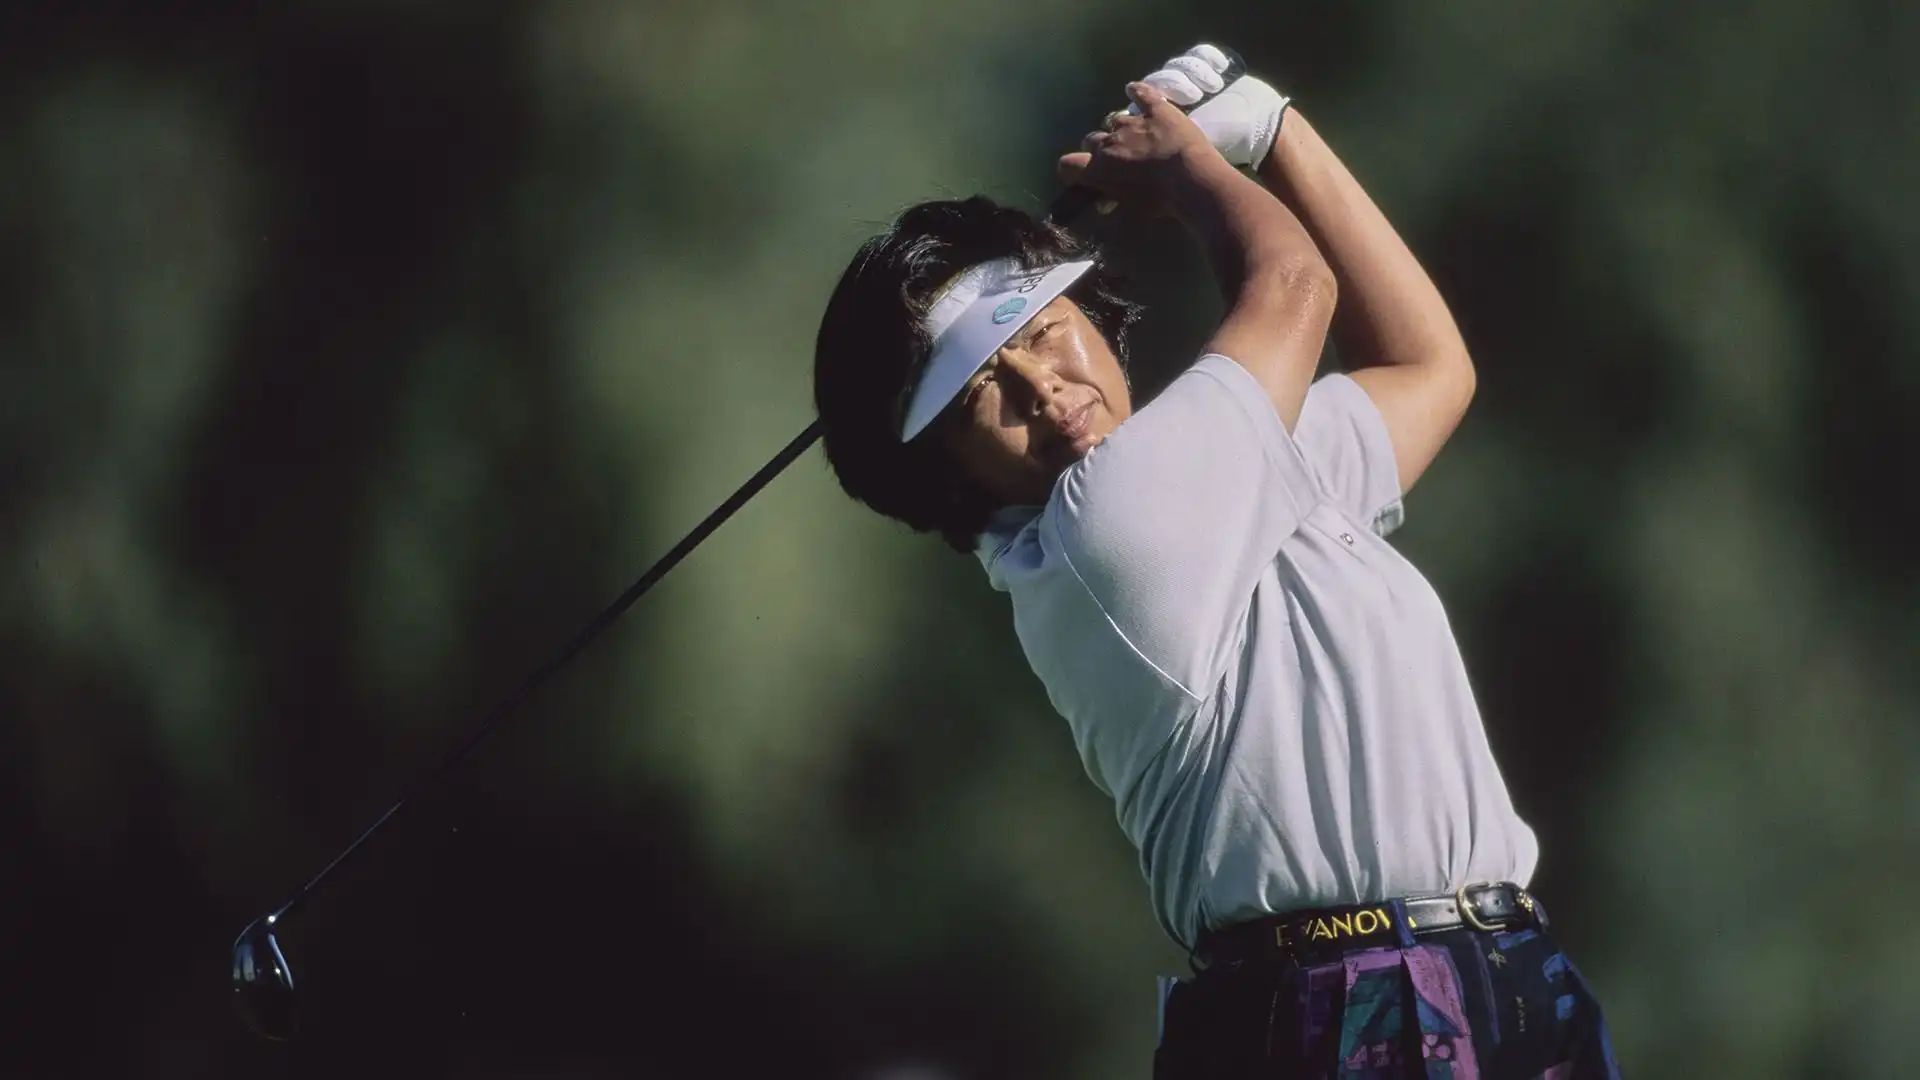 Ayako Okamoto: 17 vittorie in LPGA. E' un membro del World Golf Hall of Fame. Ben 62 i tornei internazionali vinti in carriera.